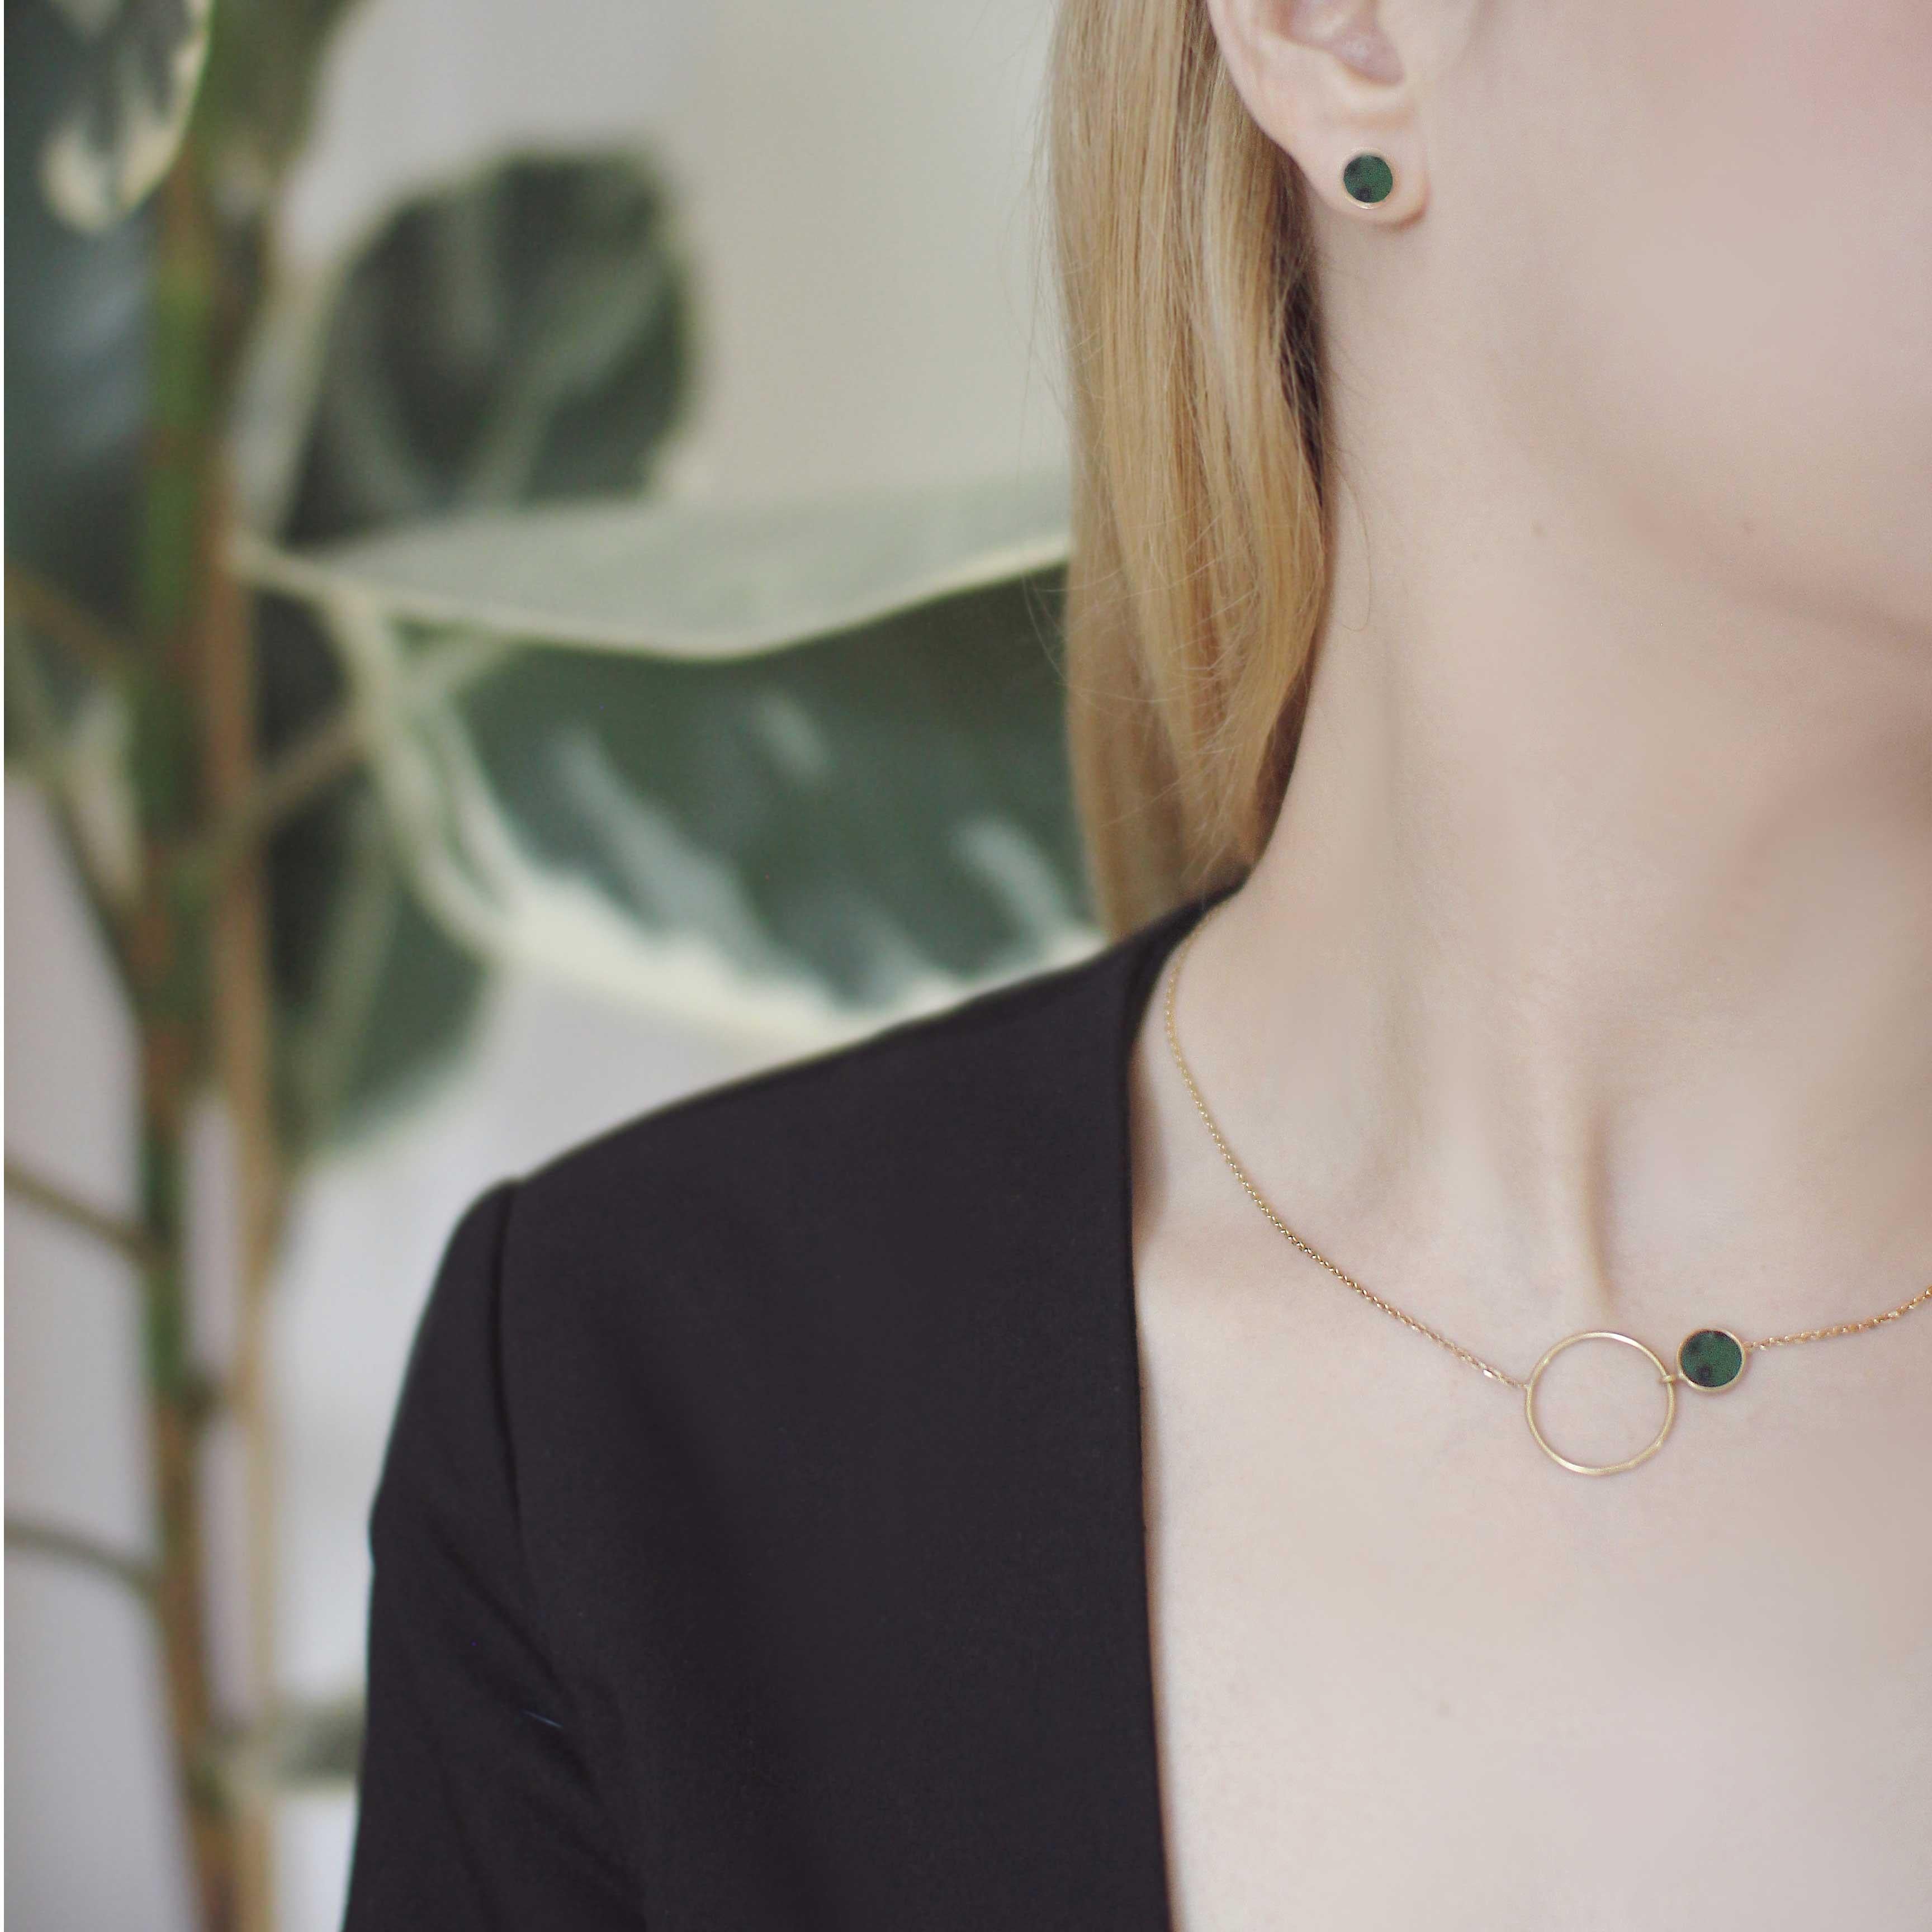 Notre collier best-seller de la collection Circles avec une pierre marbrée verte est la quintessence de l'élégance intemporelle. Son design fait référence à la perfection du cercle, symbole de complétude, d'harmonie et de féminité. Vous pouvez